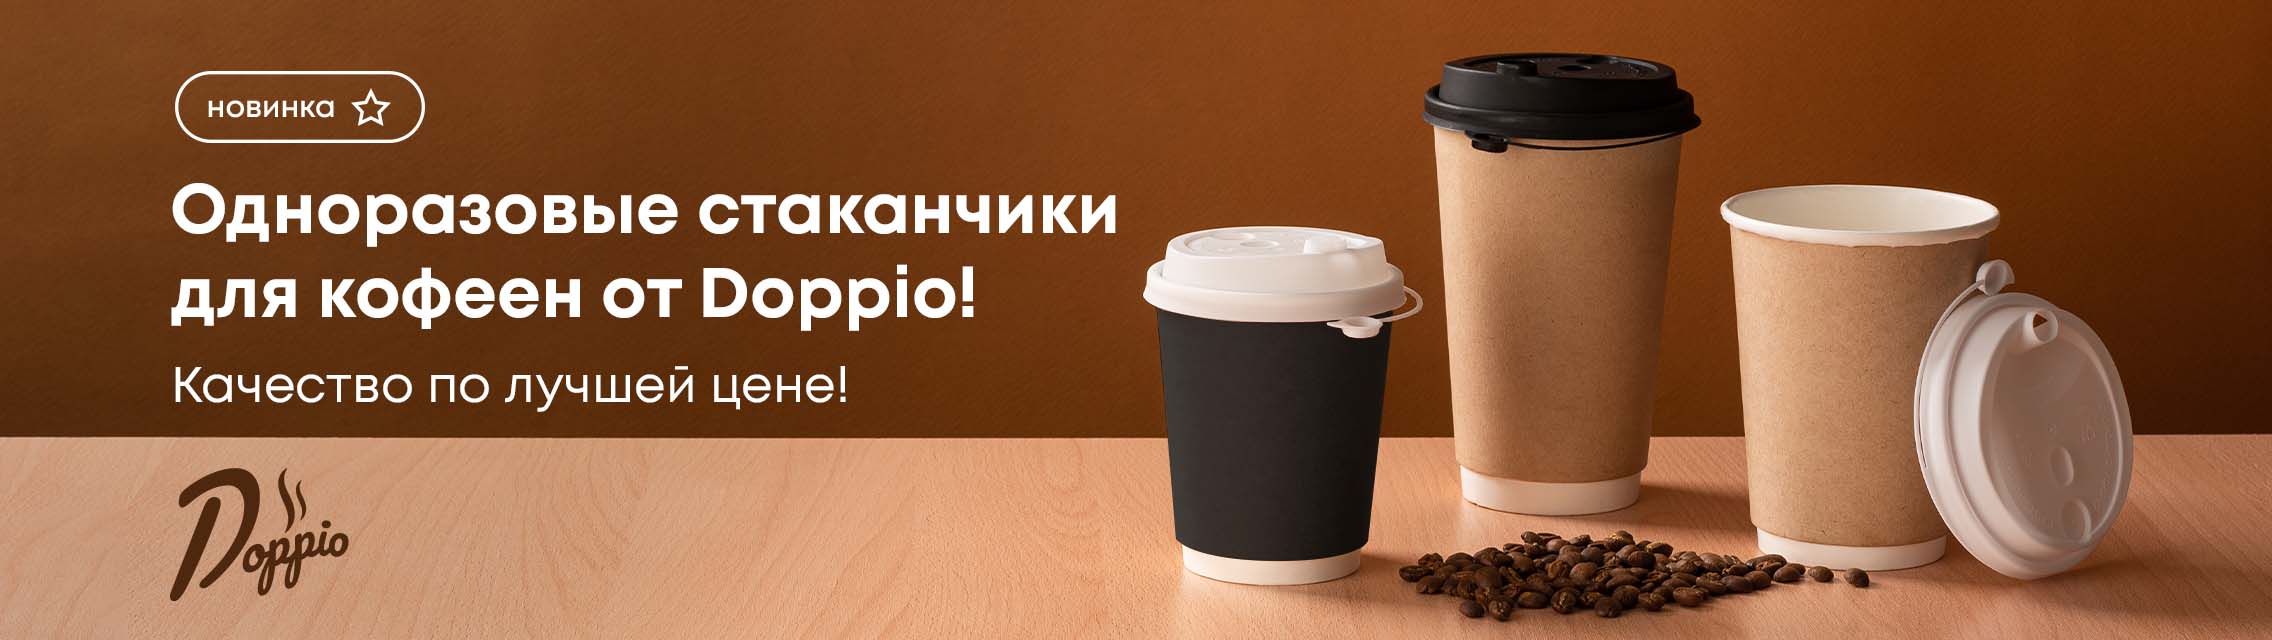 Одноразовые стаканчики для кофеен от Doppio! Качество по лучшей цене!